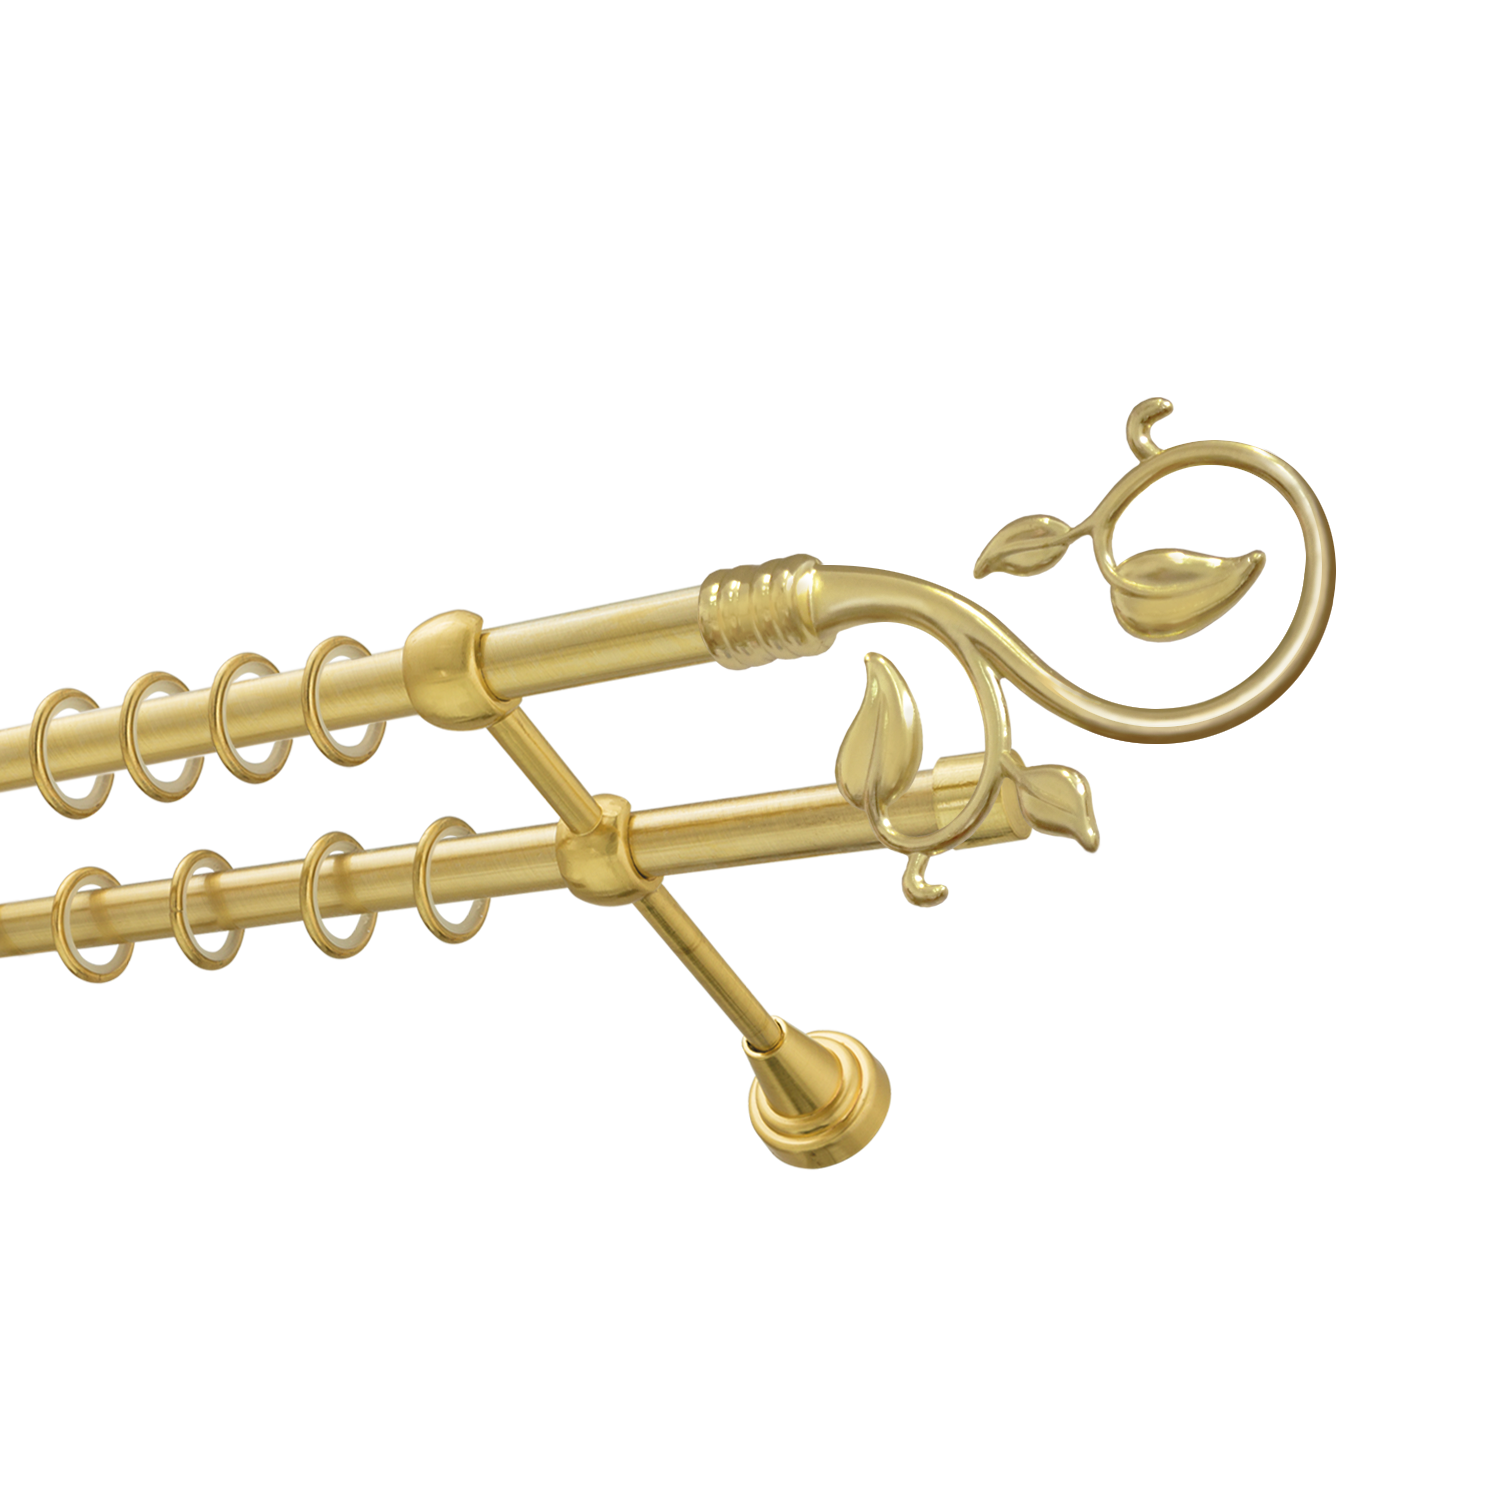 Металлический карниз для штор Амели, двухрядный 16/16 мм, золото, гладкая штанга, длина 140 см - фото Wikidecor.ru